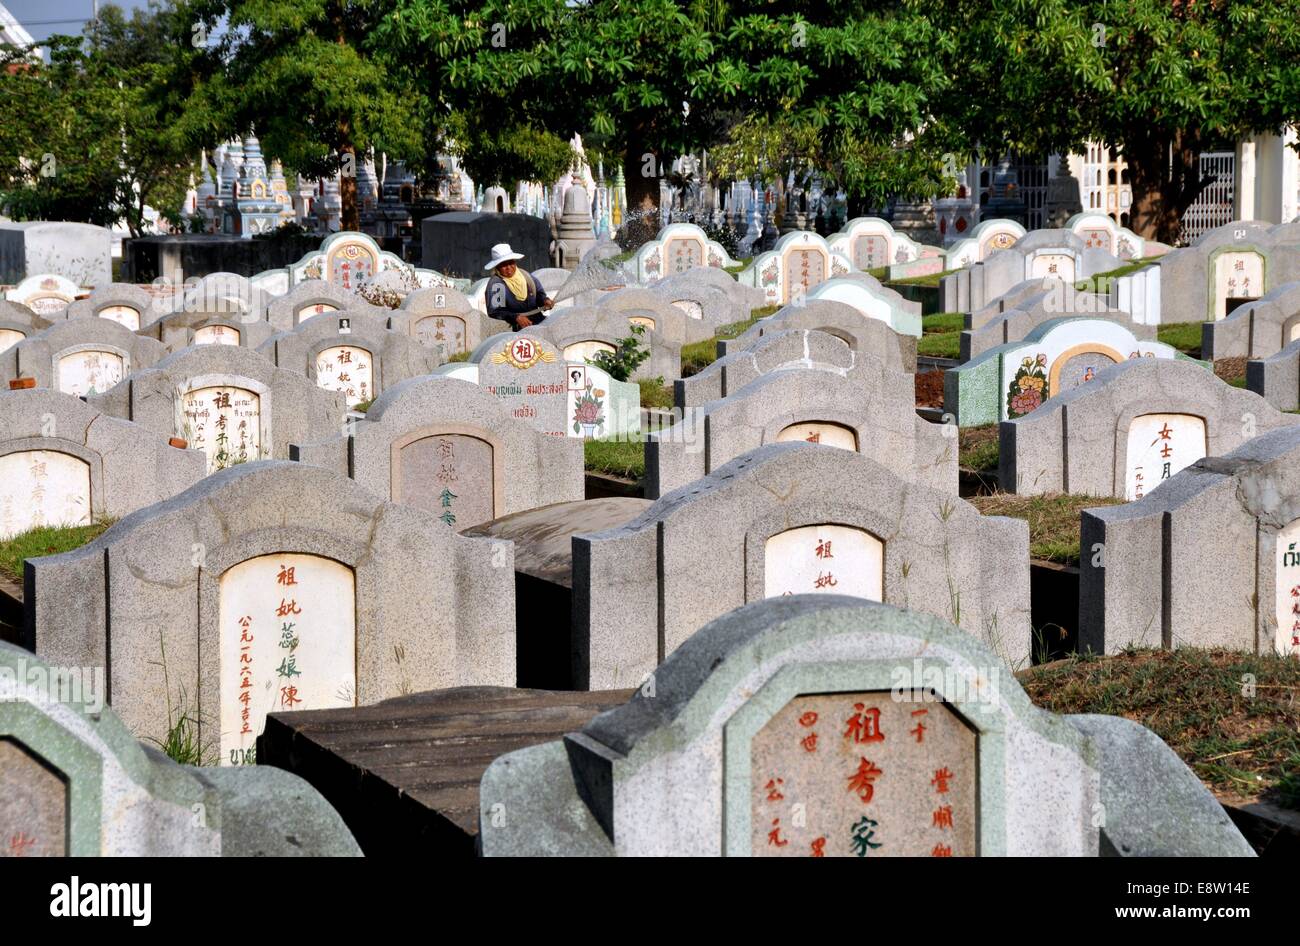 KANCHANABURI, THAILAND:  Row upon row of Chinese gravestones at the Kachanaburi Chinese Cemetery Stock Photo